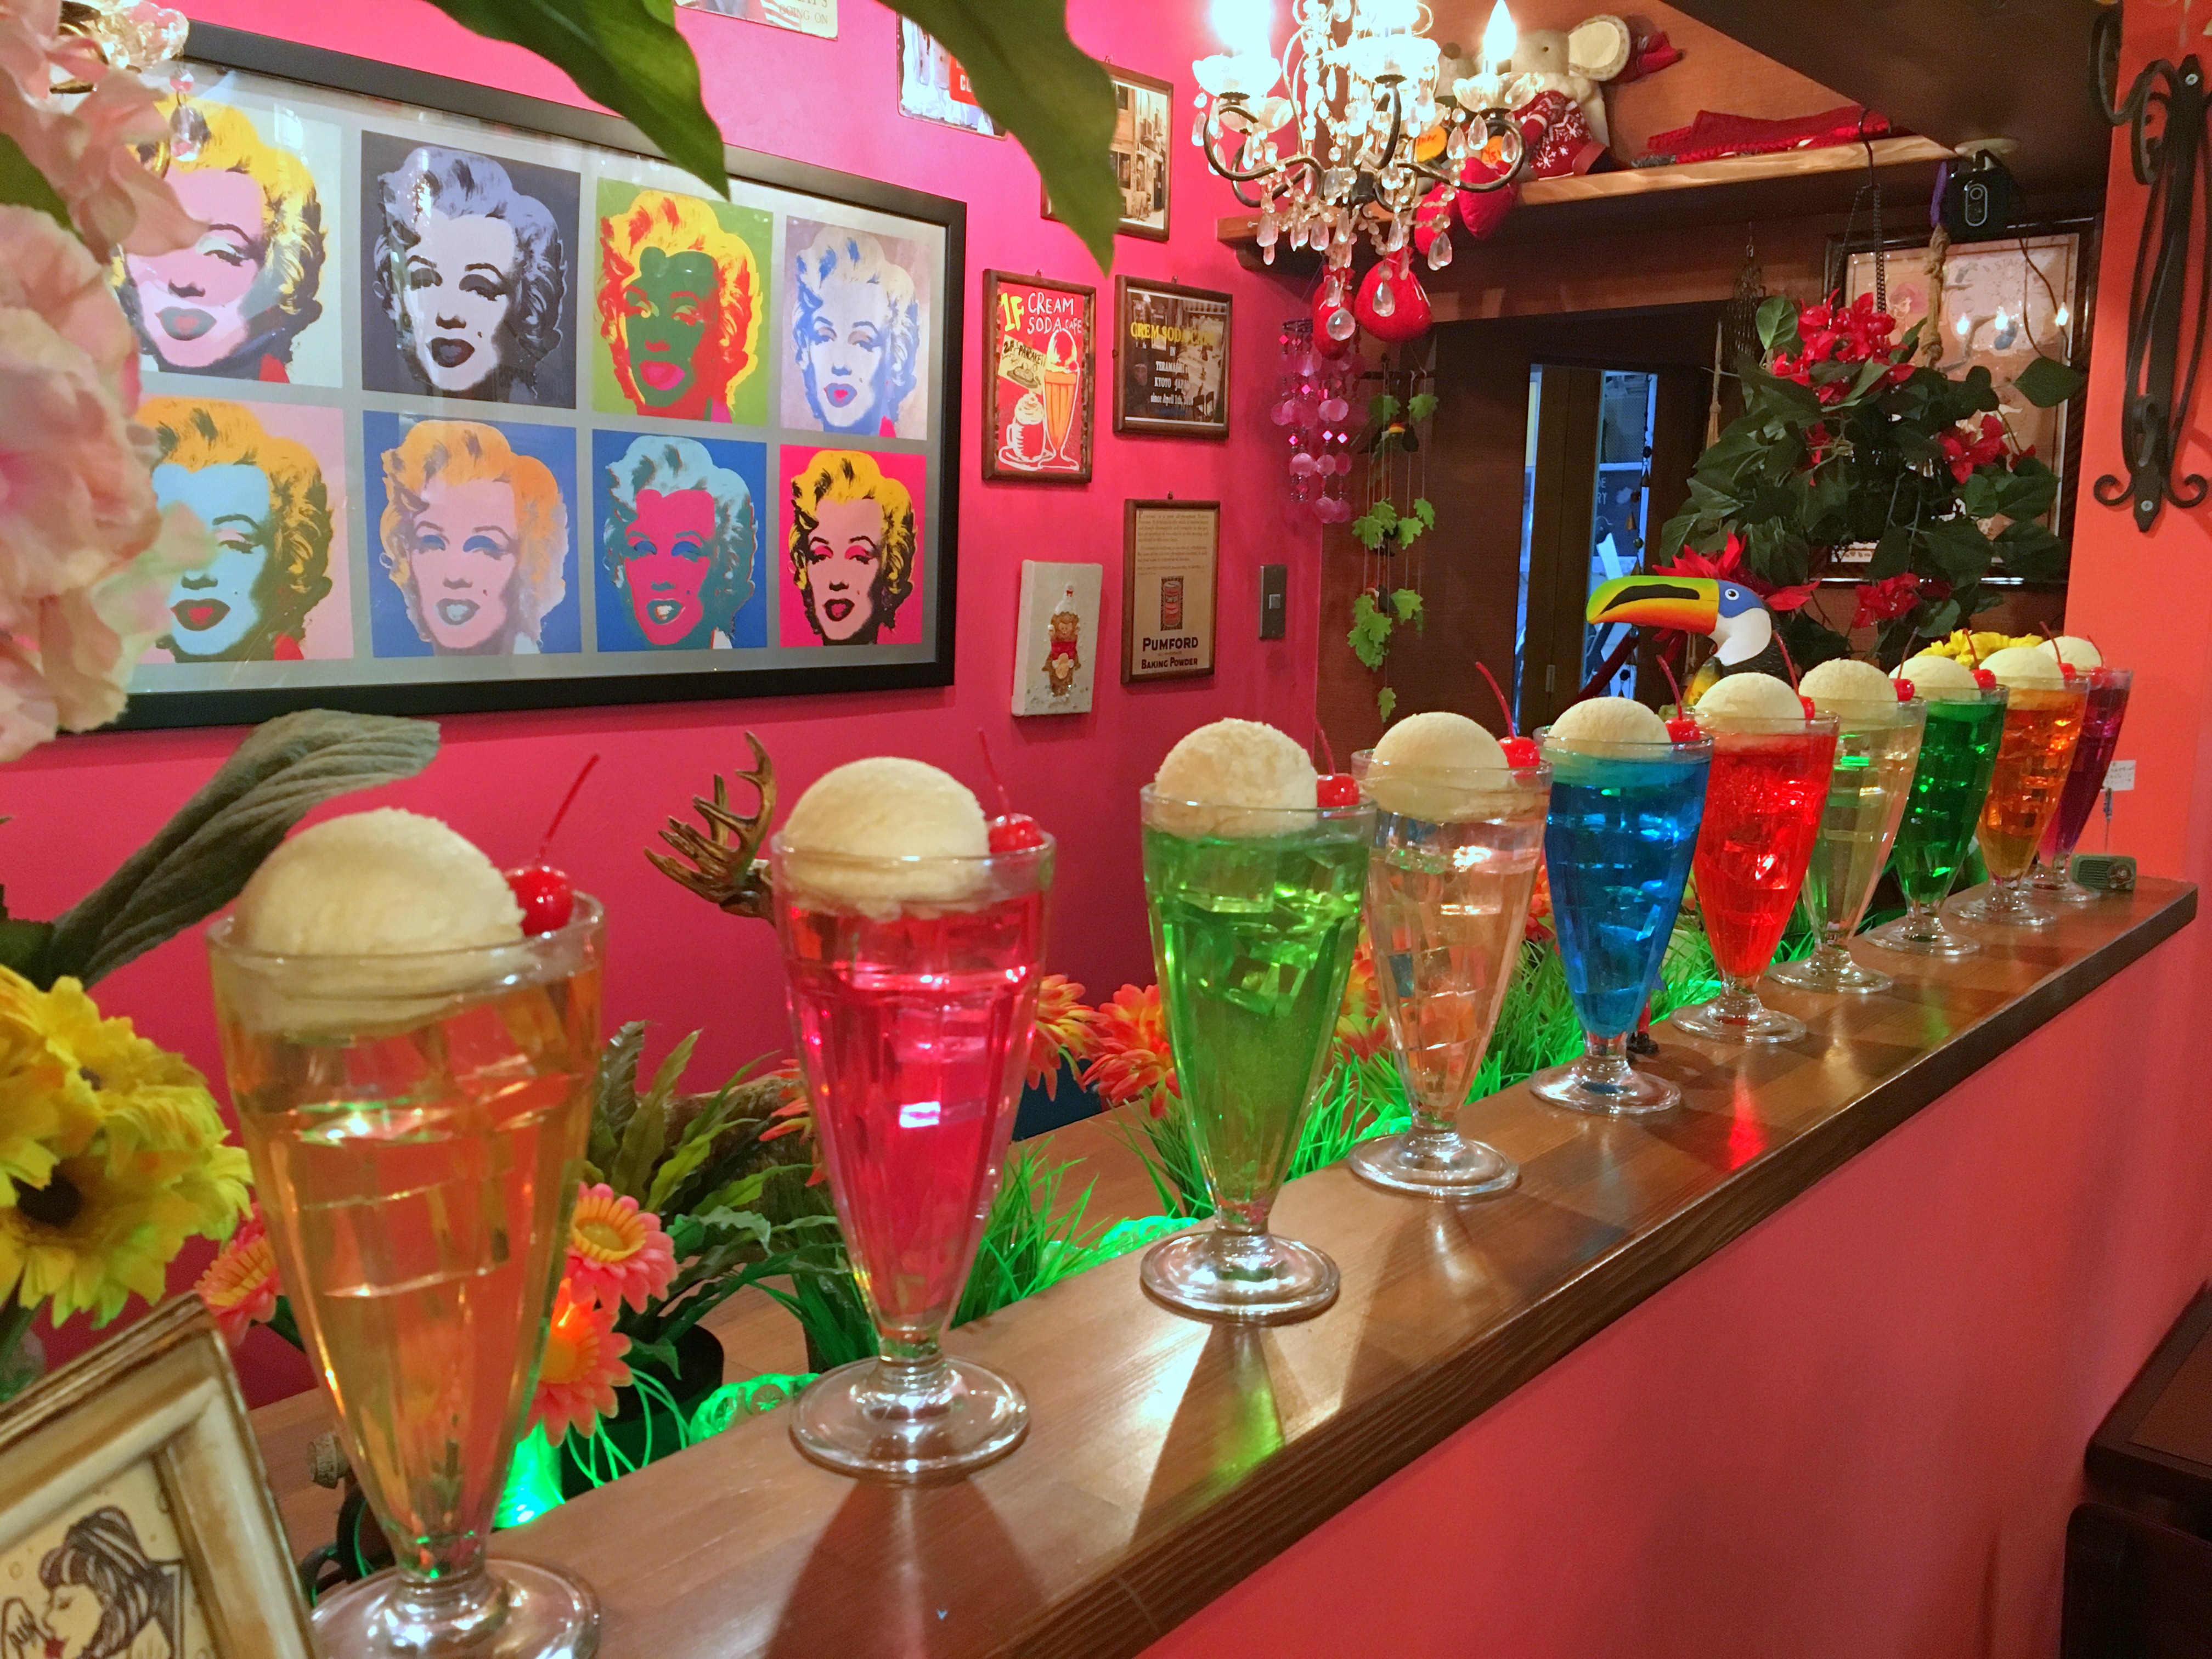 24種類ものクリームソーダが飲める！ 京都の喫茶店『SHIN−SETSU』のカラフルドリンクがゆめ可愛ぃぃぃぃー!! | ロケットニュース24